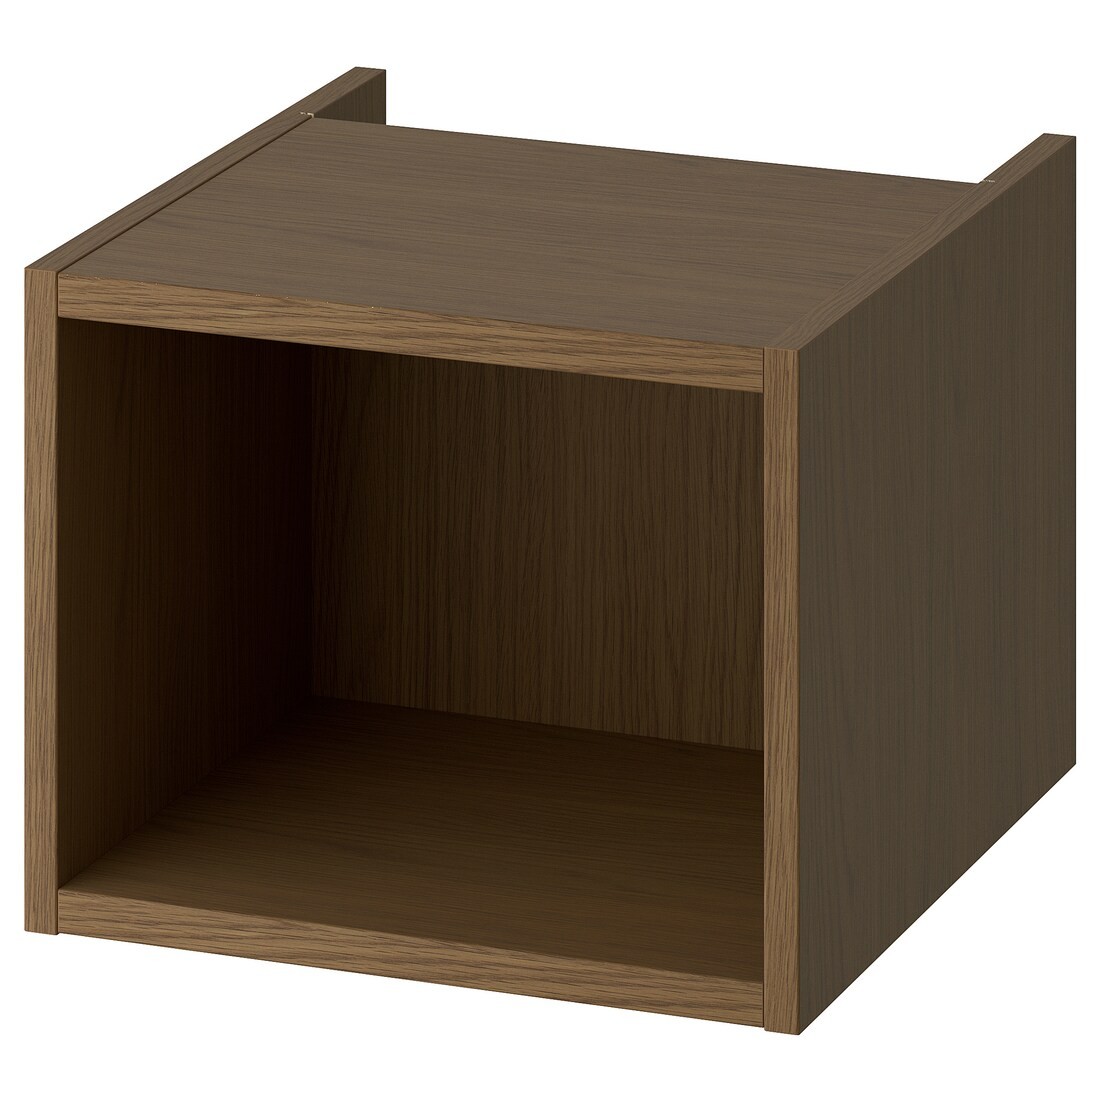 HAGAÅN Открытый шкаф, коричневая имитация дуб, 40x48x33 см